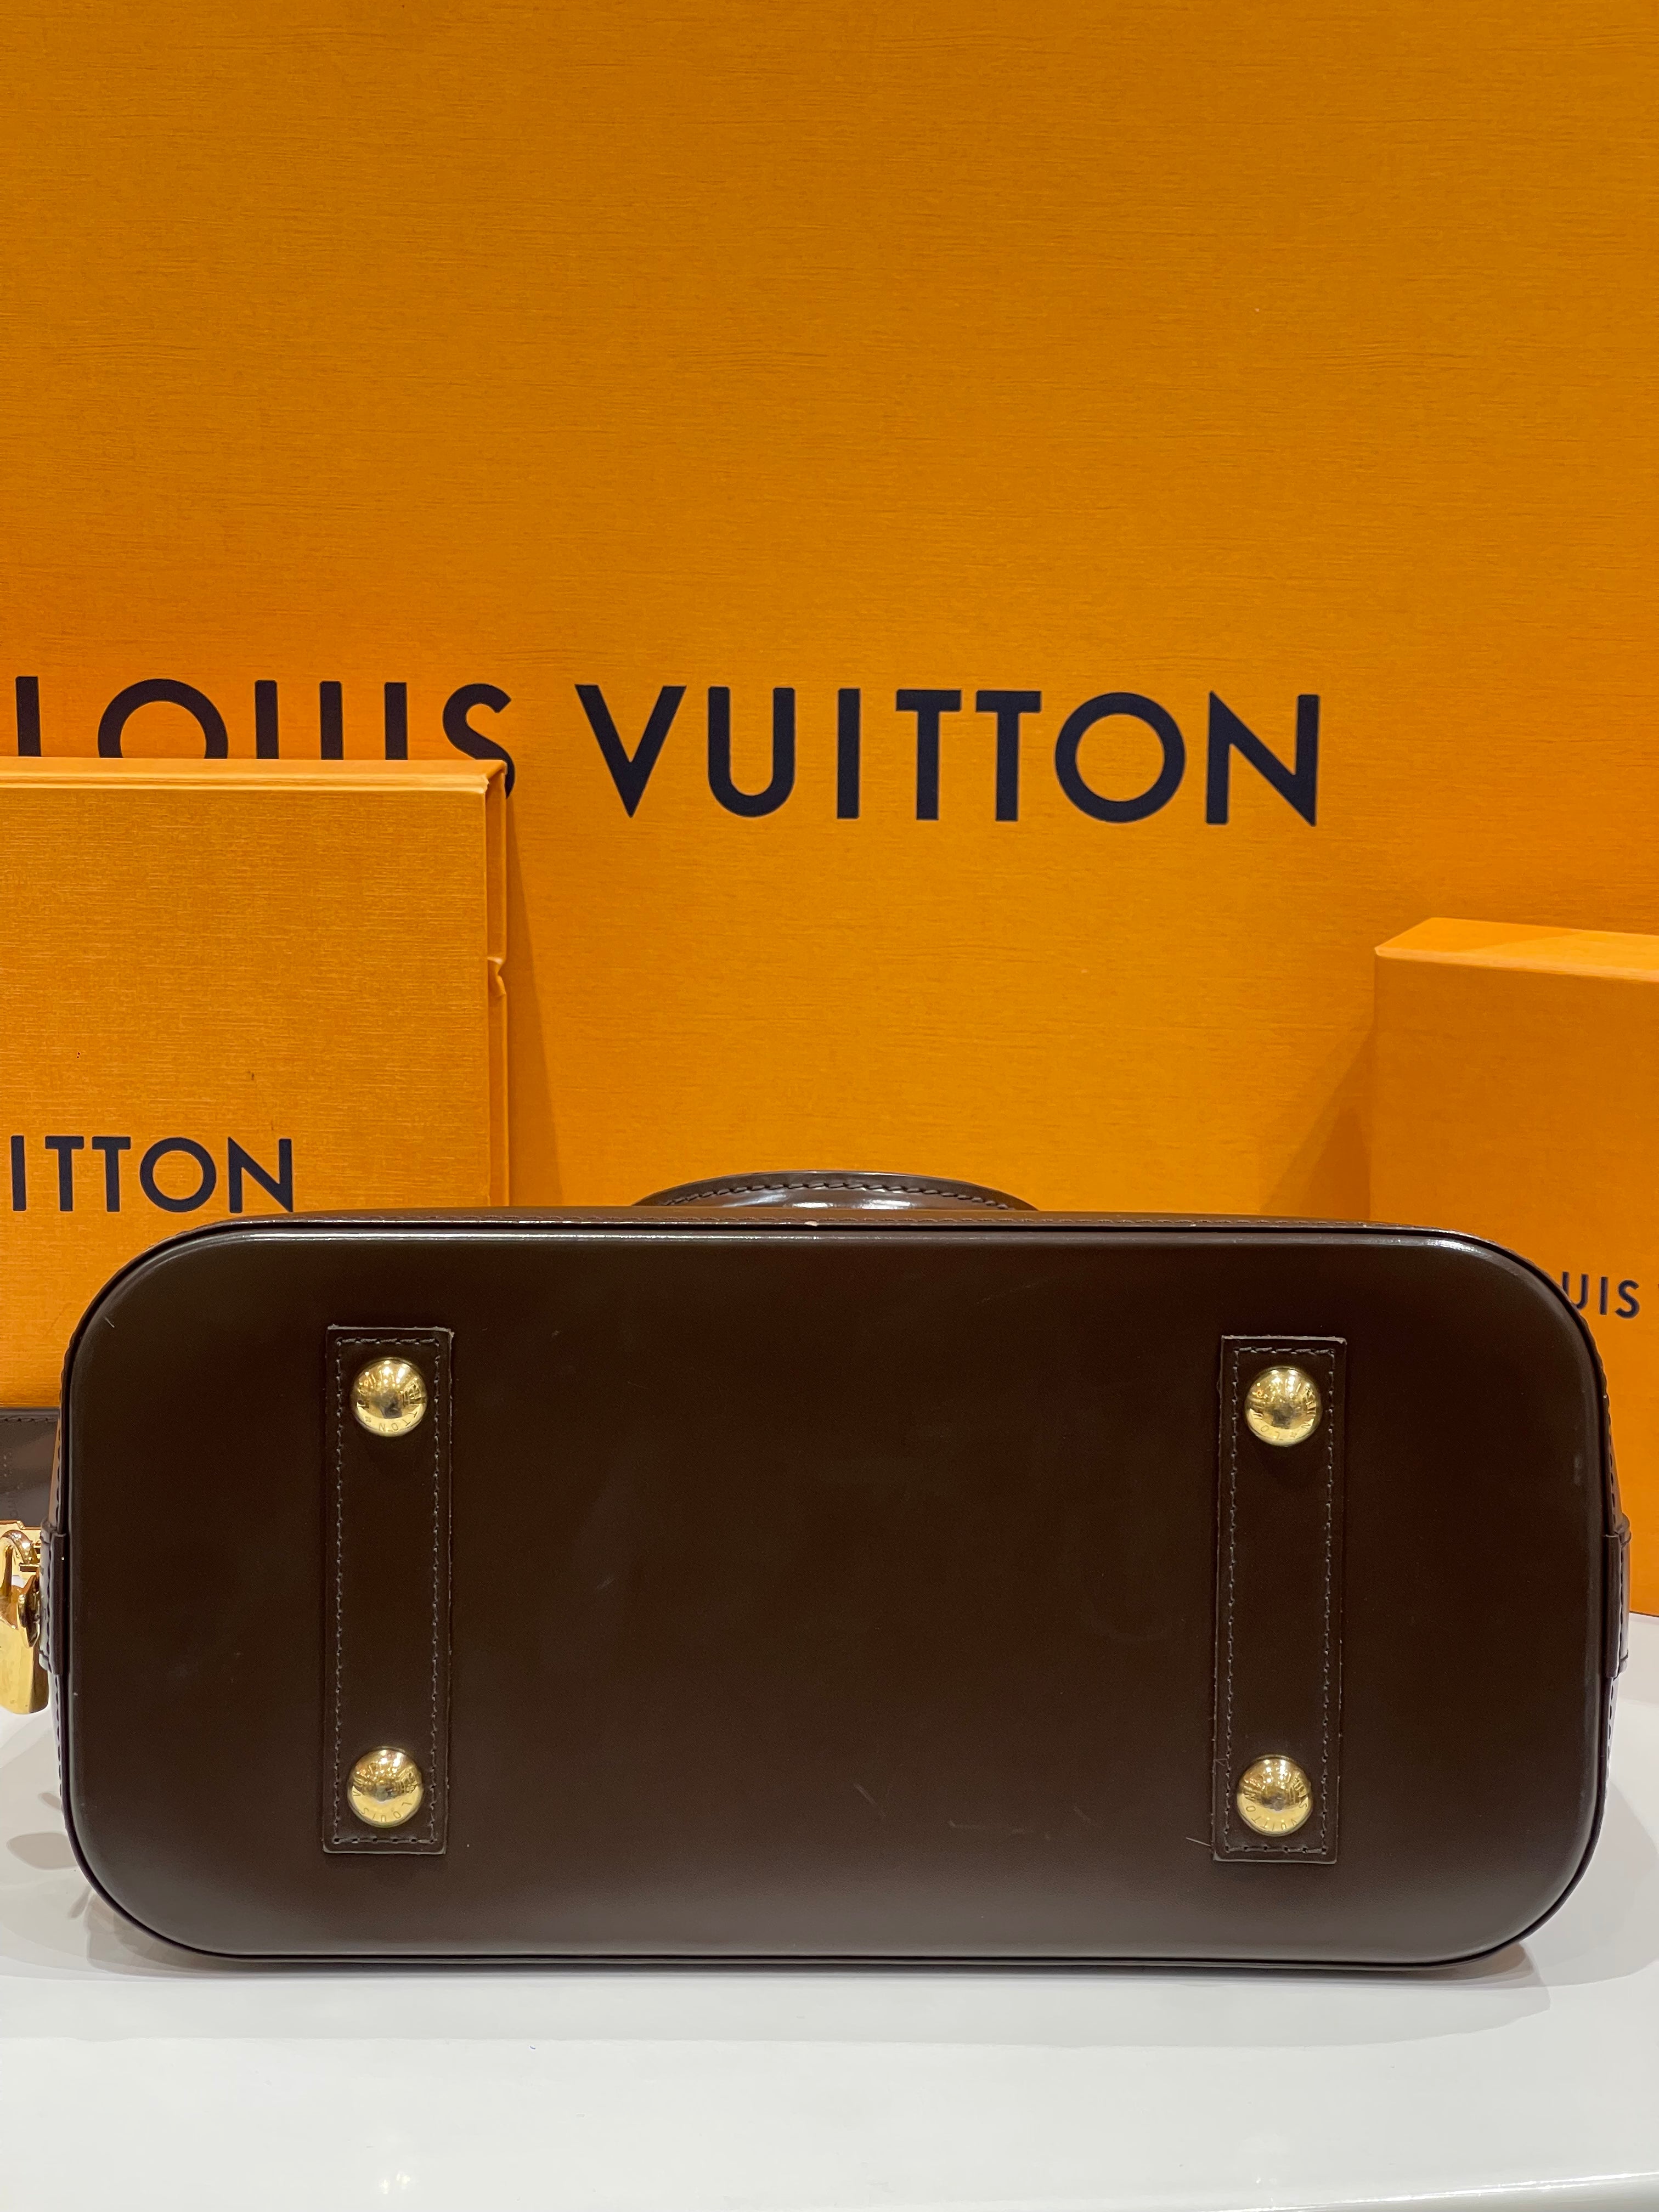 Louis Vuitton - Sac Alma PM damier ébène